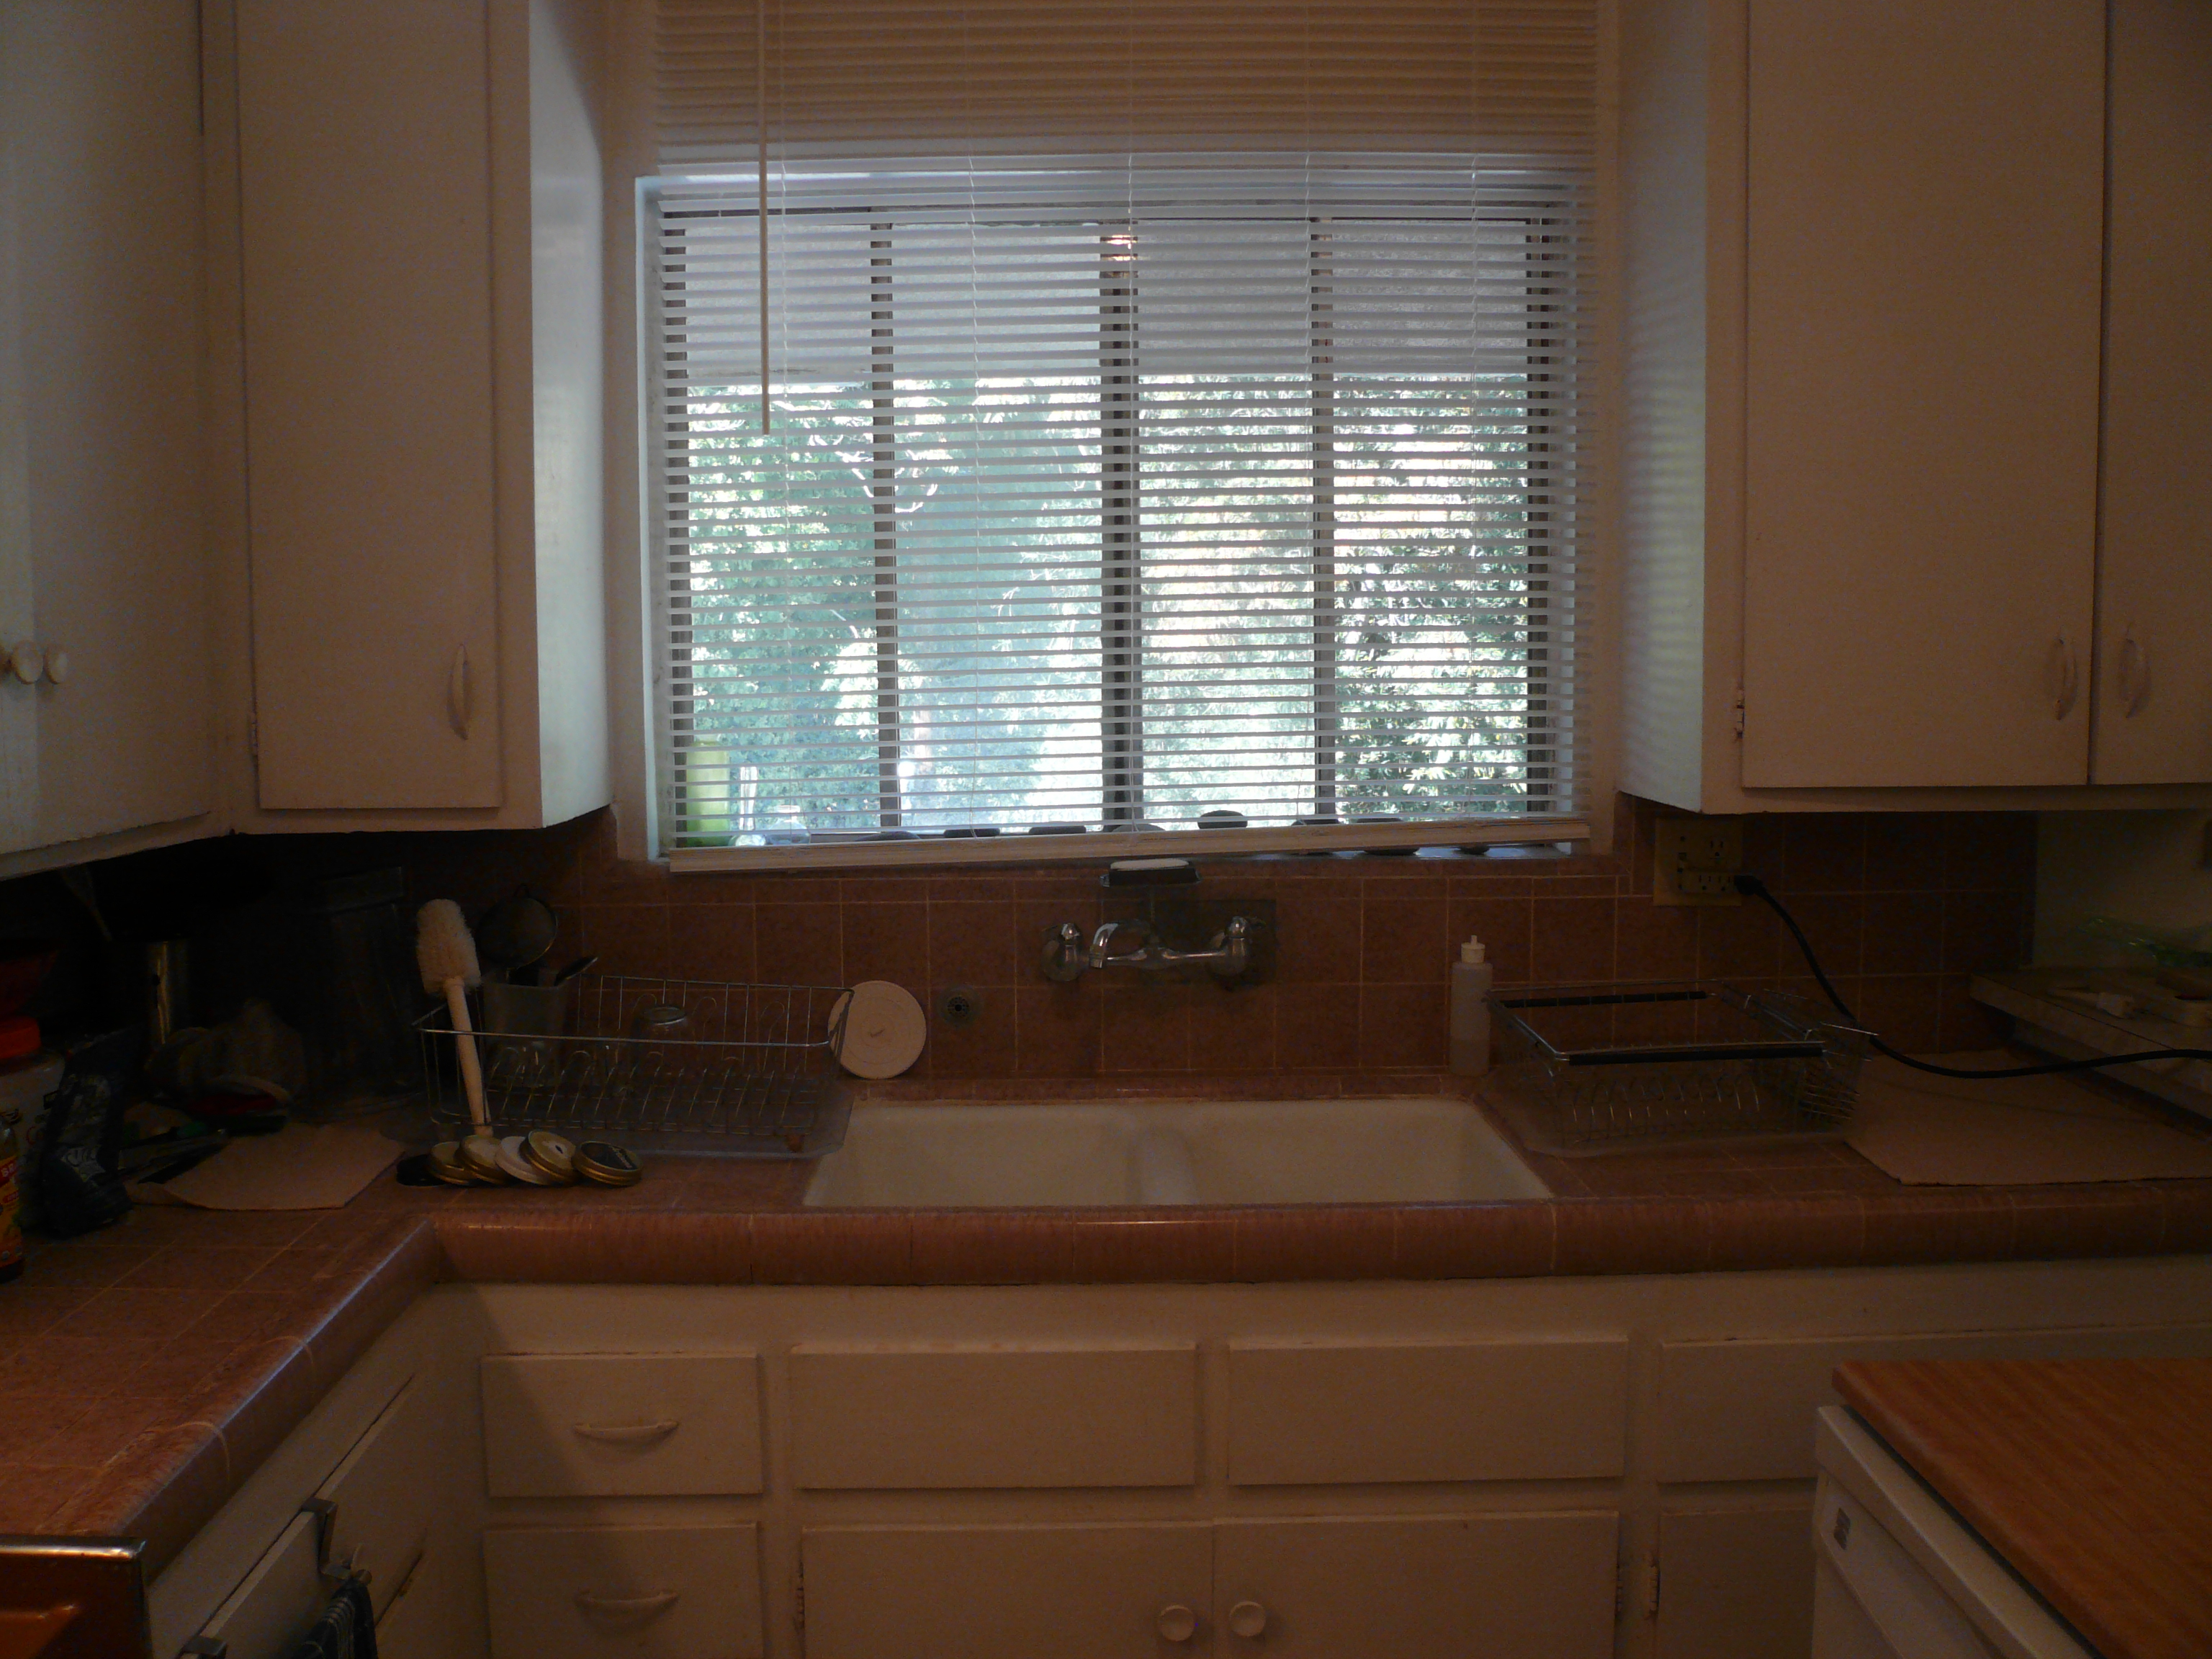 Kitchen-5 Window-Sink-Dishwasher